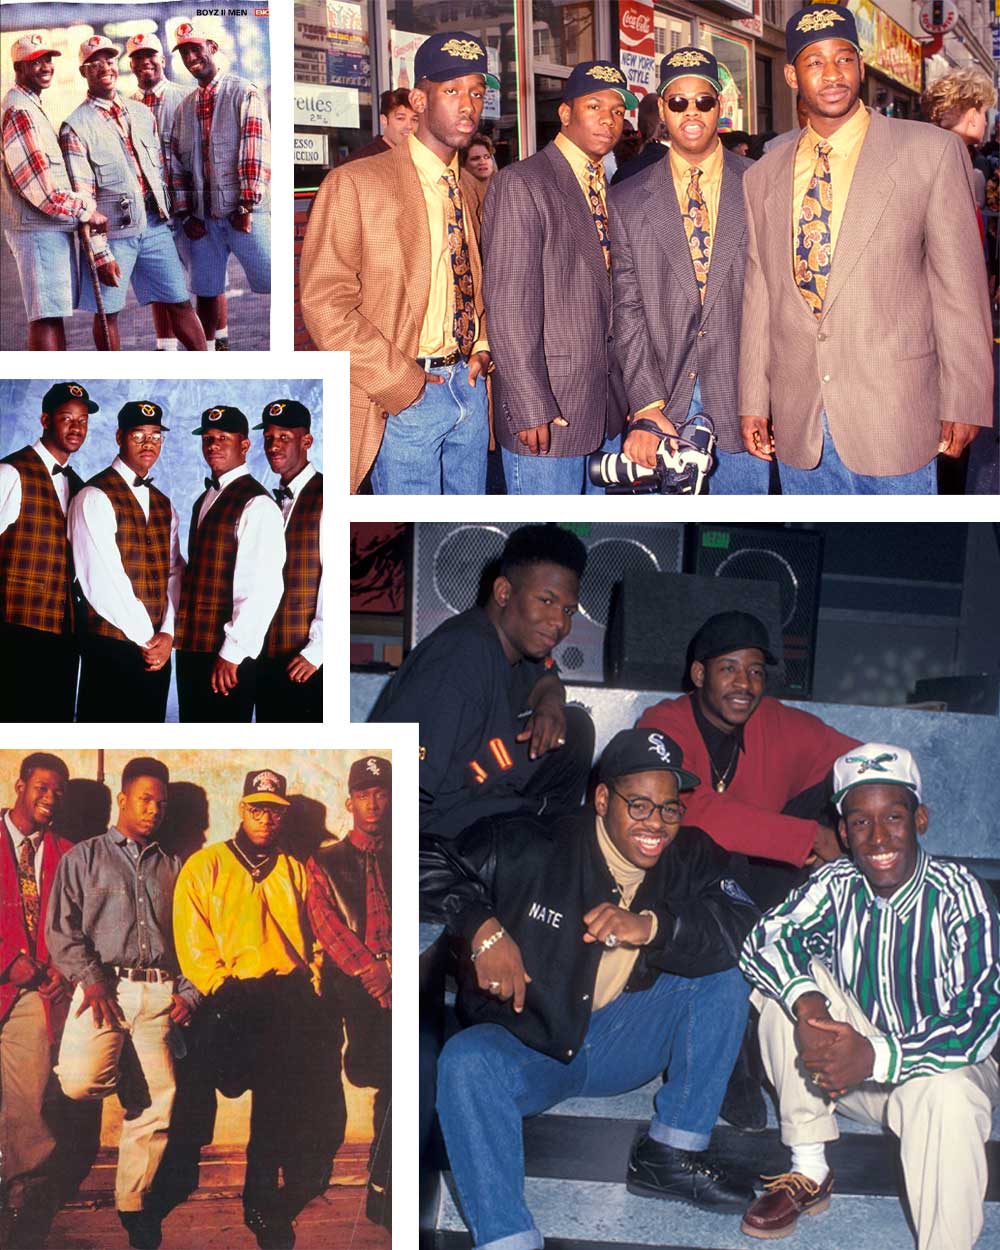 Boyz 2 Men 90s Hip-hop Preppy fashion style